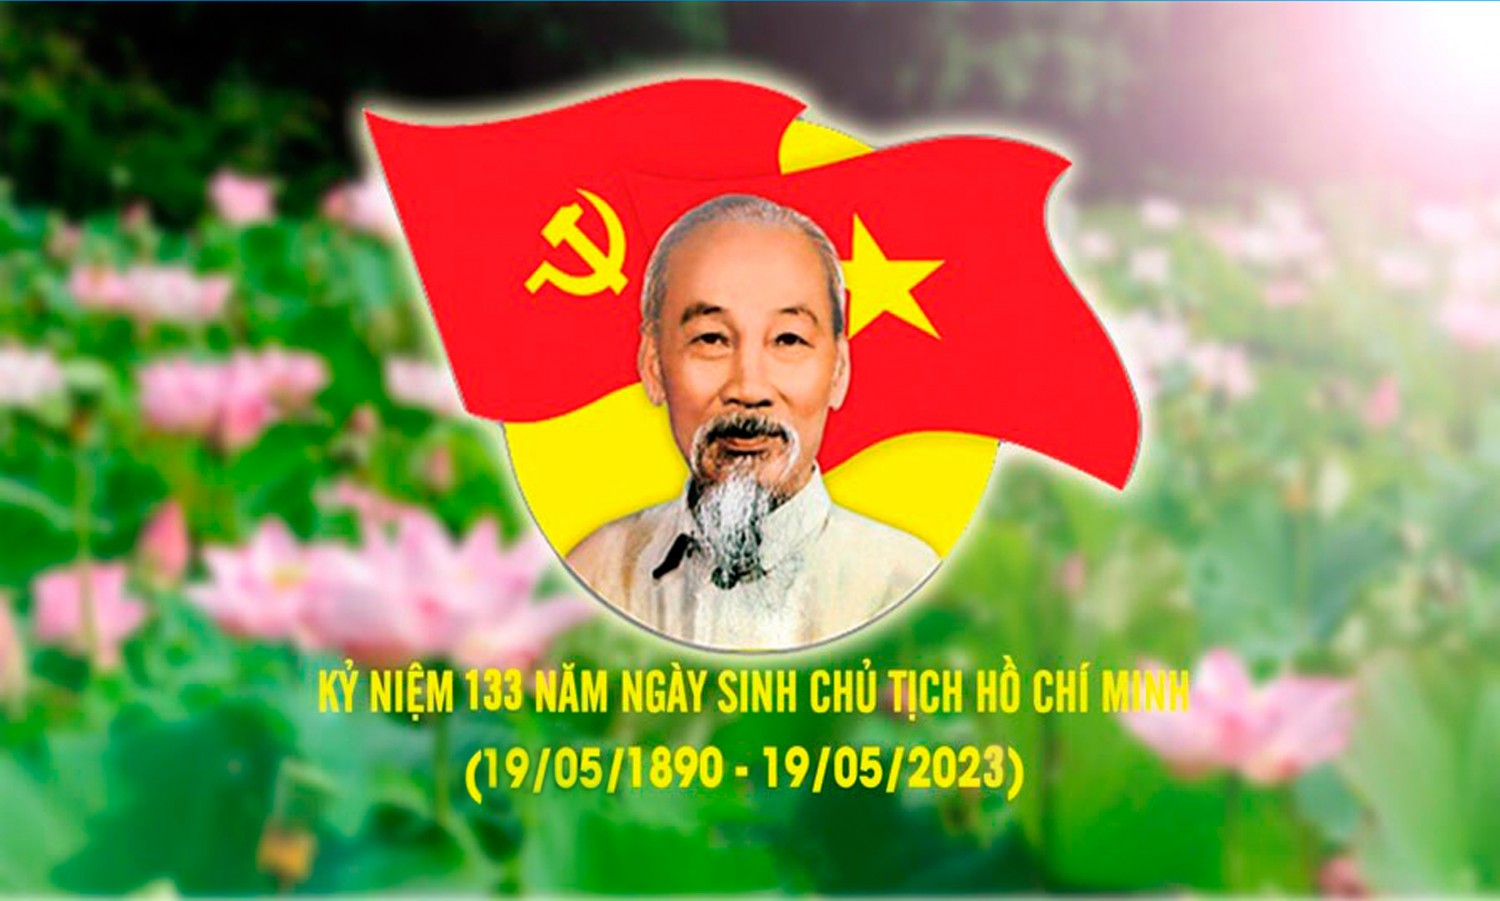 Kỷ niệm 133 năm Ngày sinh Chủ tịch Hồ Chí Minh